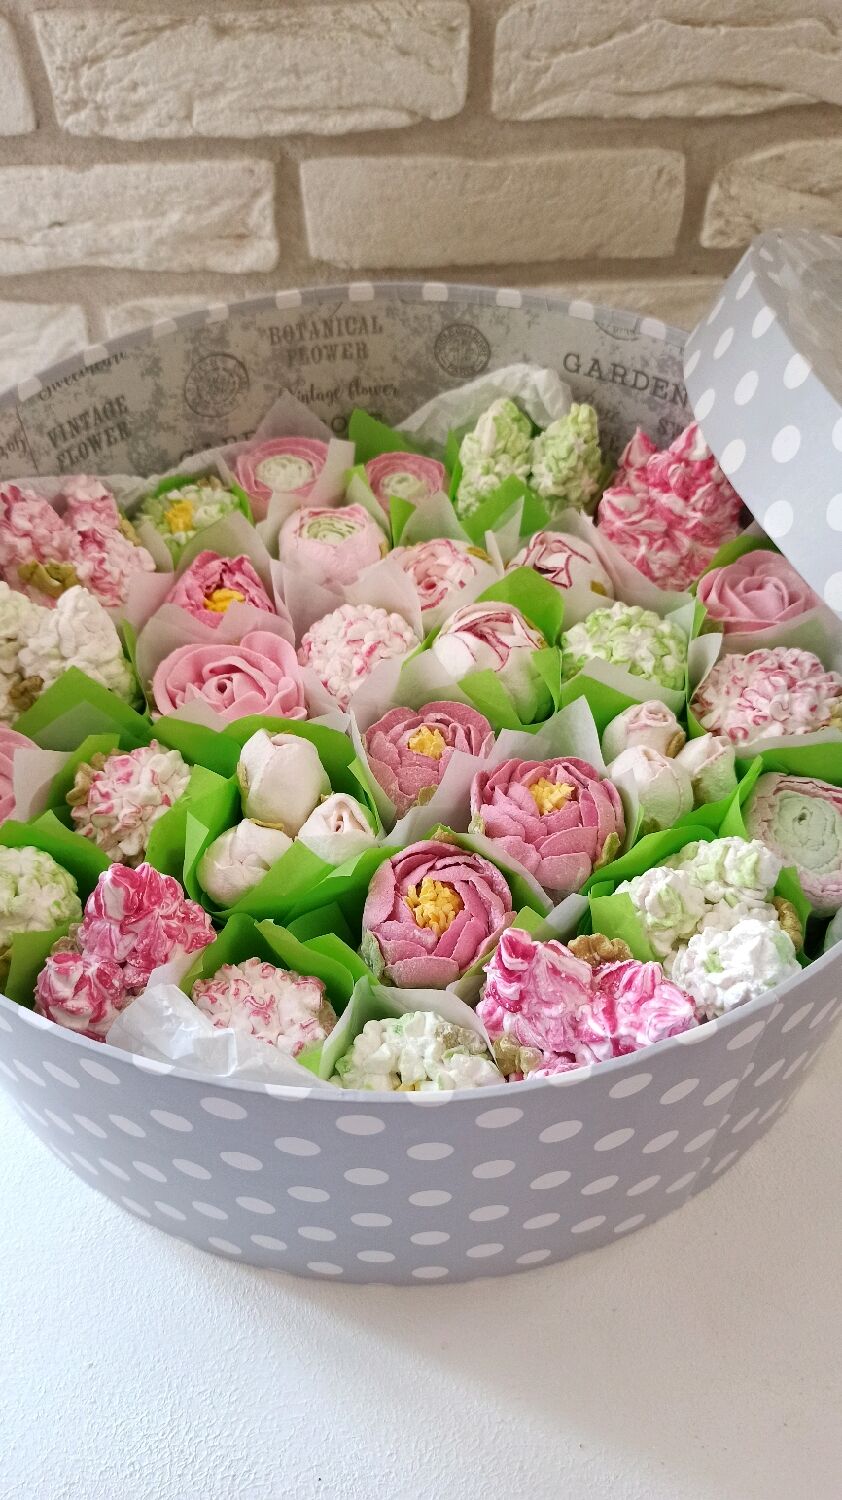 Цветы в коробке. Бесплатная доставка в Нижнем Новгороде | эталон62.рф